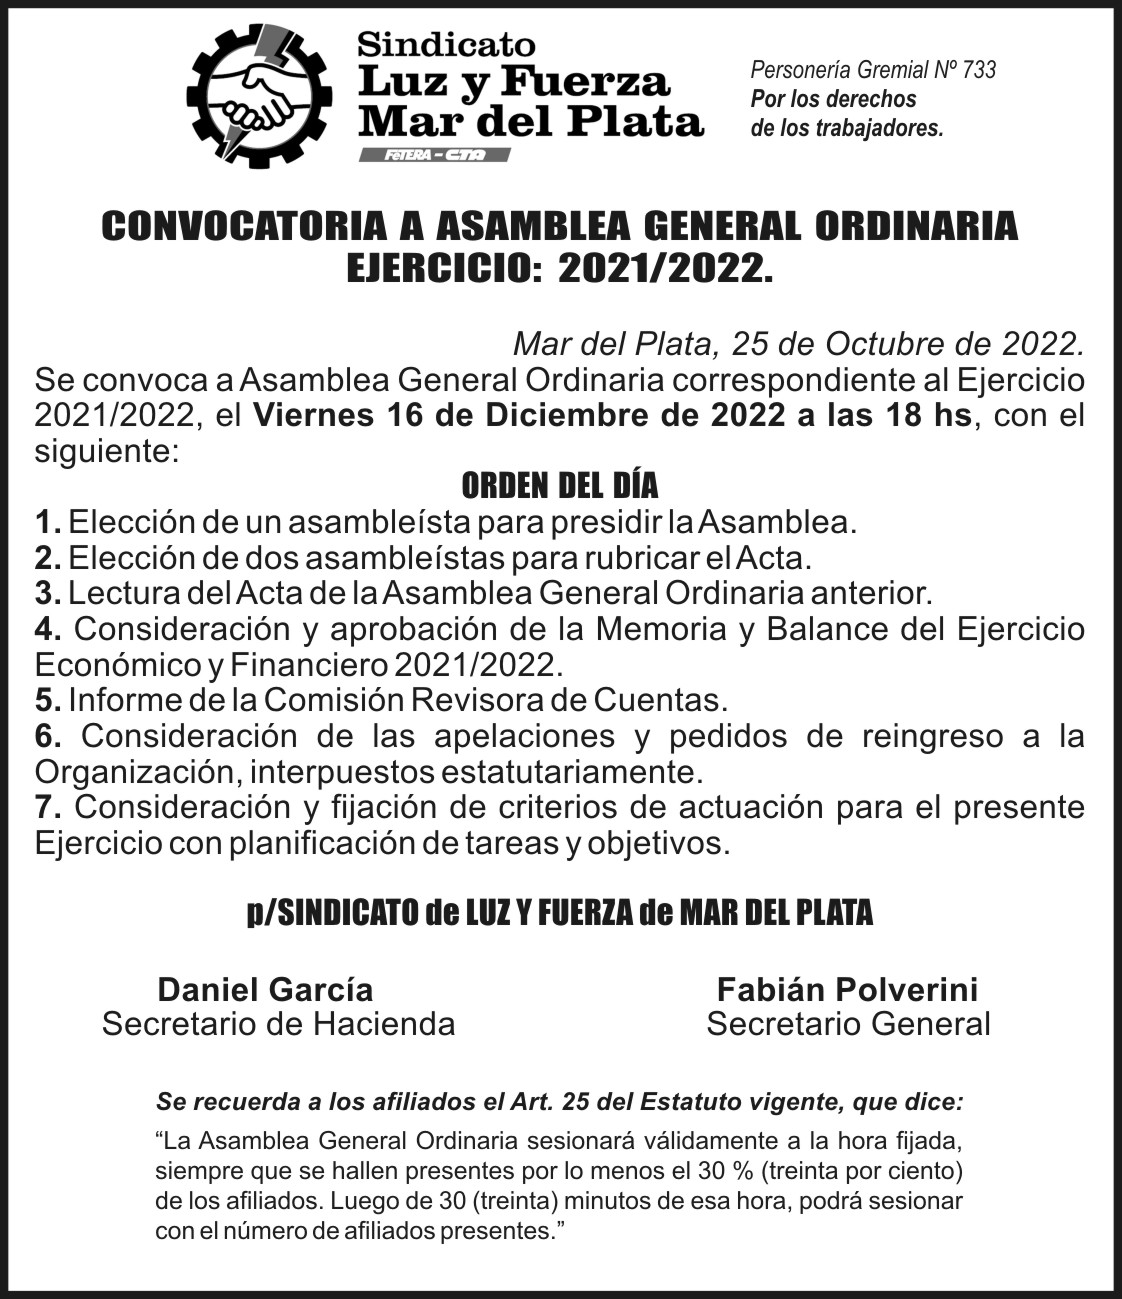 CONVOCATORIA A ASAMBLEA GENERAL ORDINARIA EJERCICIO DEL 1/05/2021 AL 30/04/2022